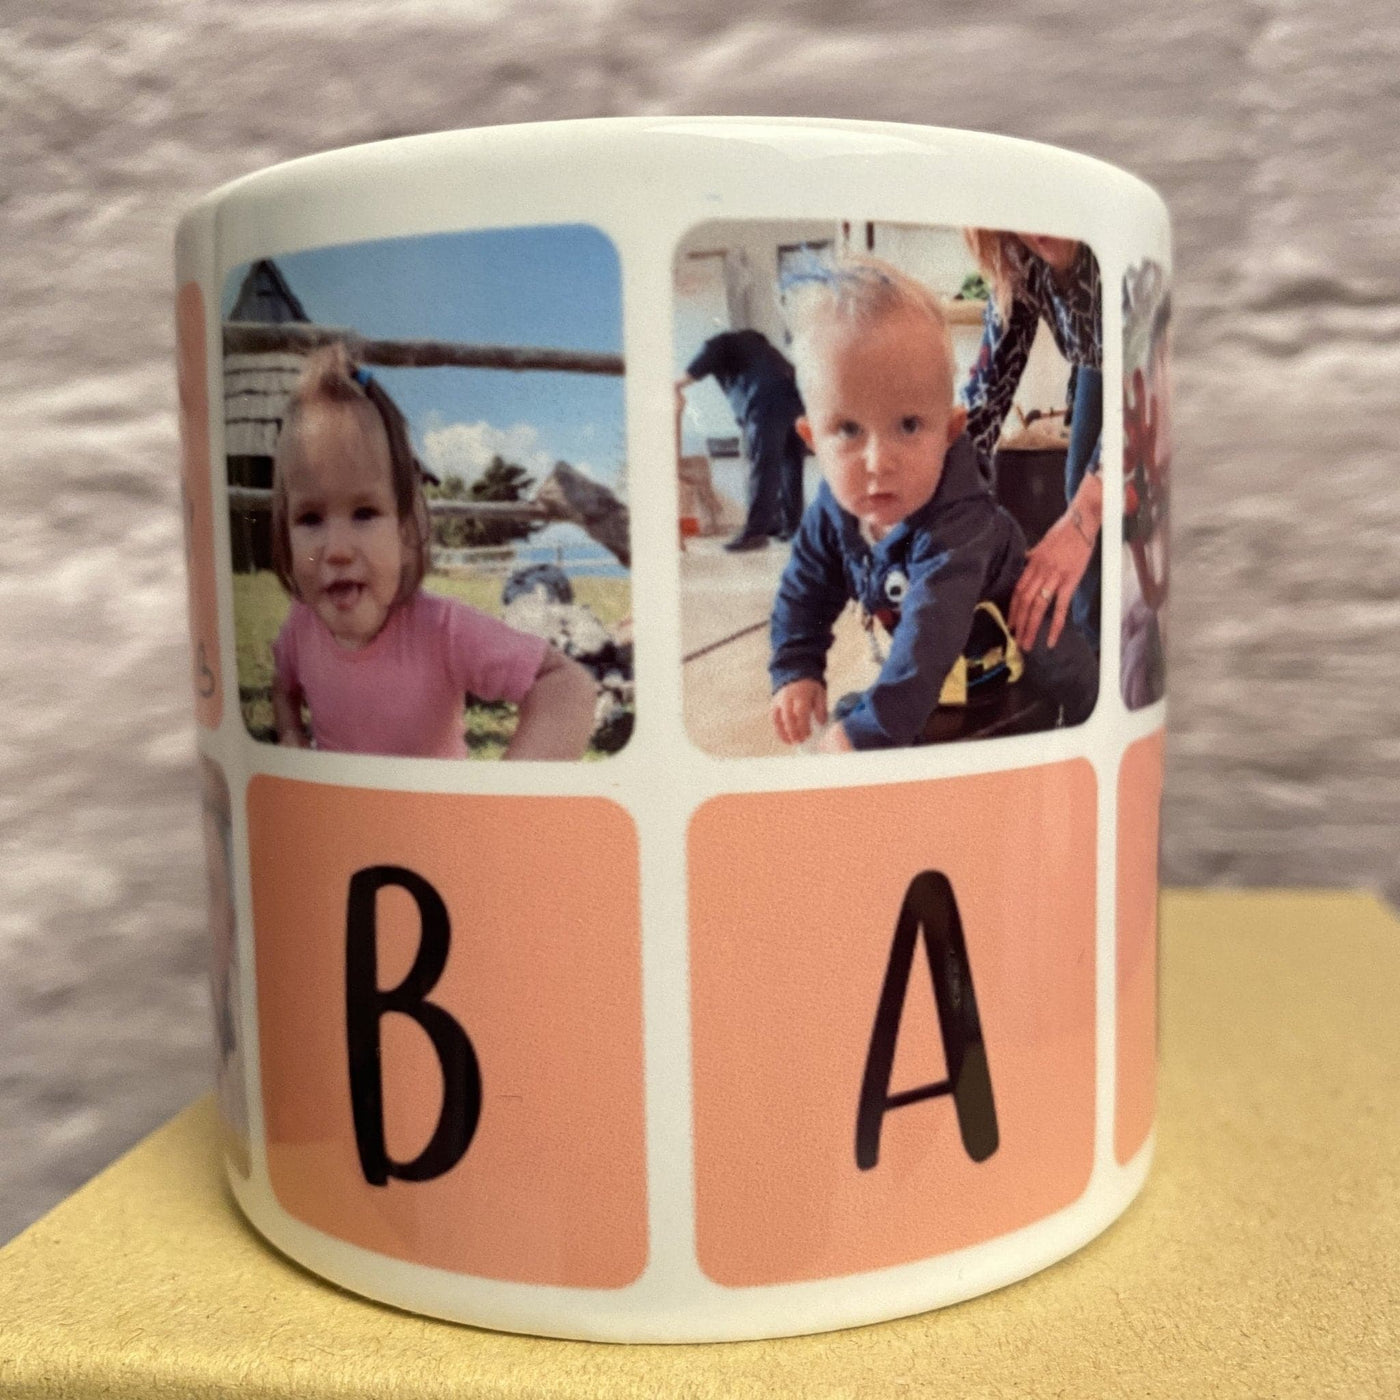 Mala (170ml) keramična skodelica z fotografijami in napisom - BIBA.si spletna trgovina